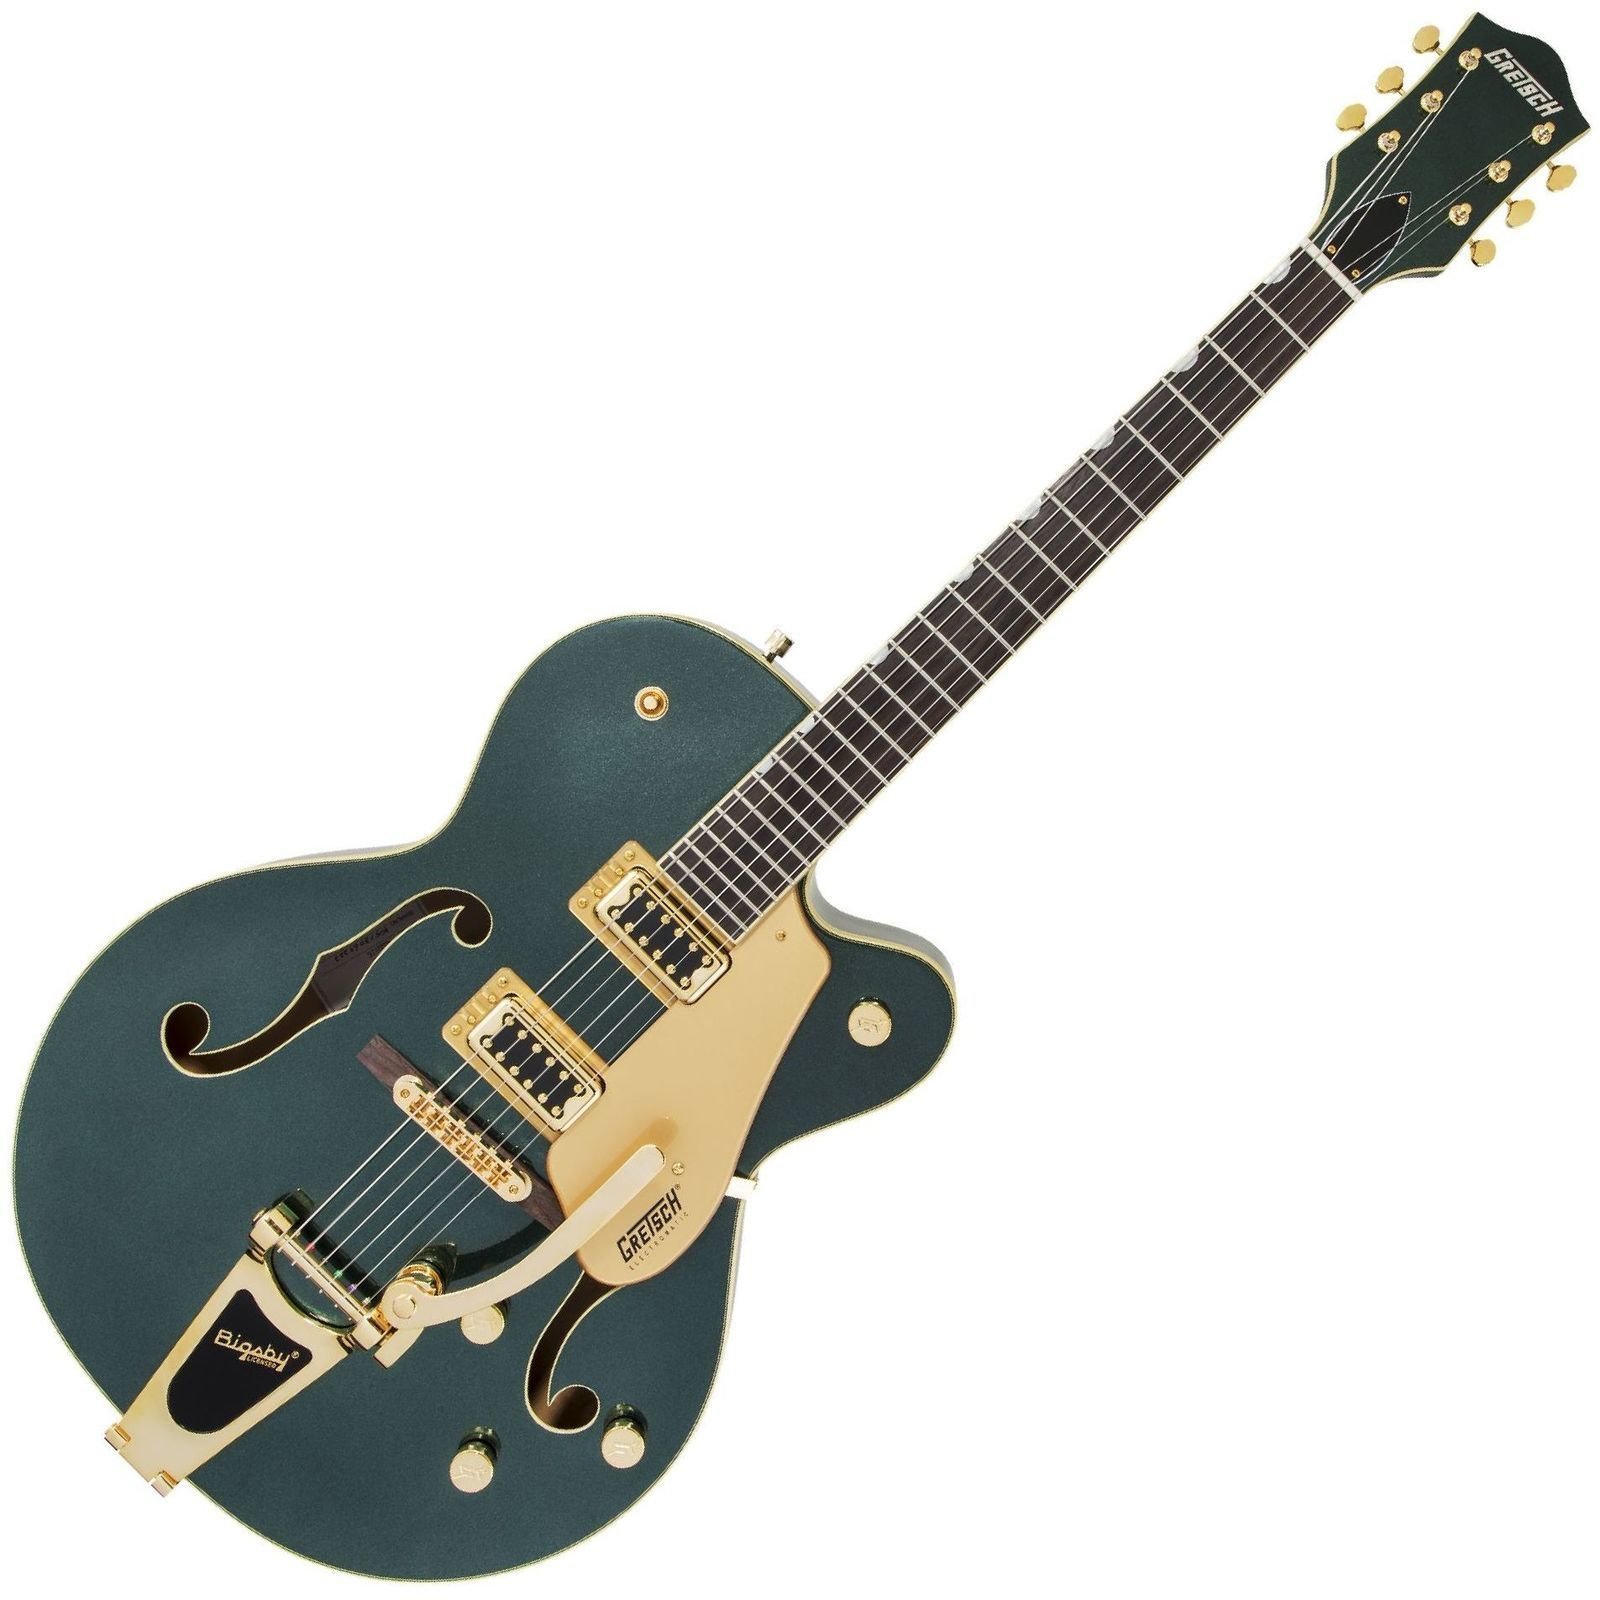 Semi-akoestische gitaar Gretsch G5420TG Limited Edition Electromatic RW Cadillac Green